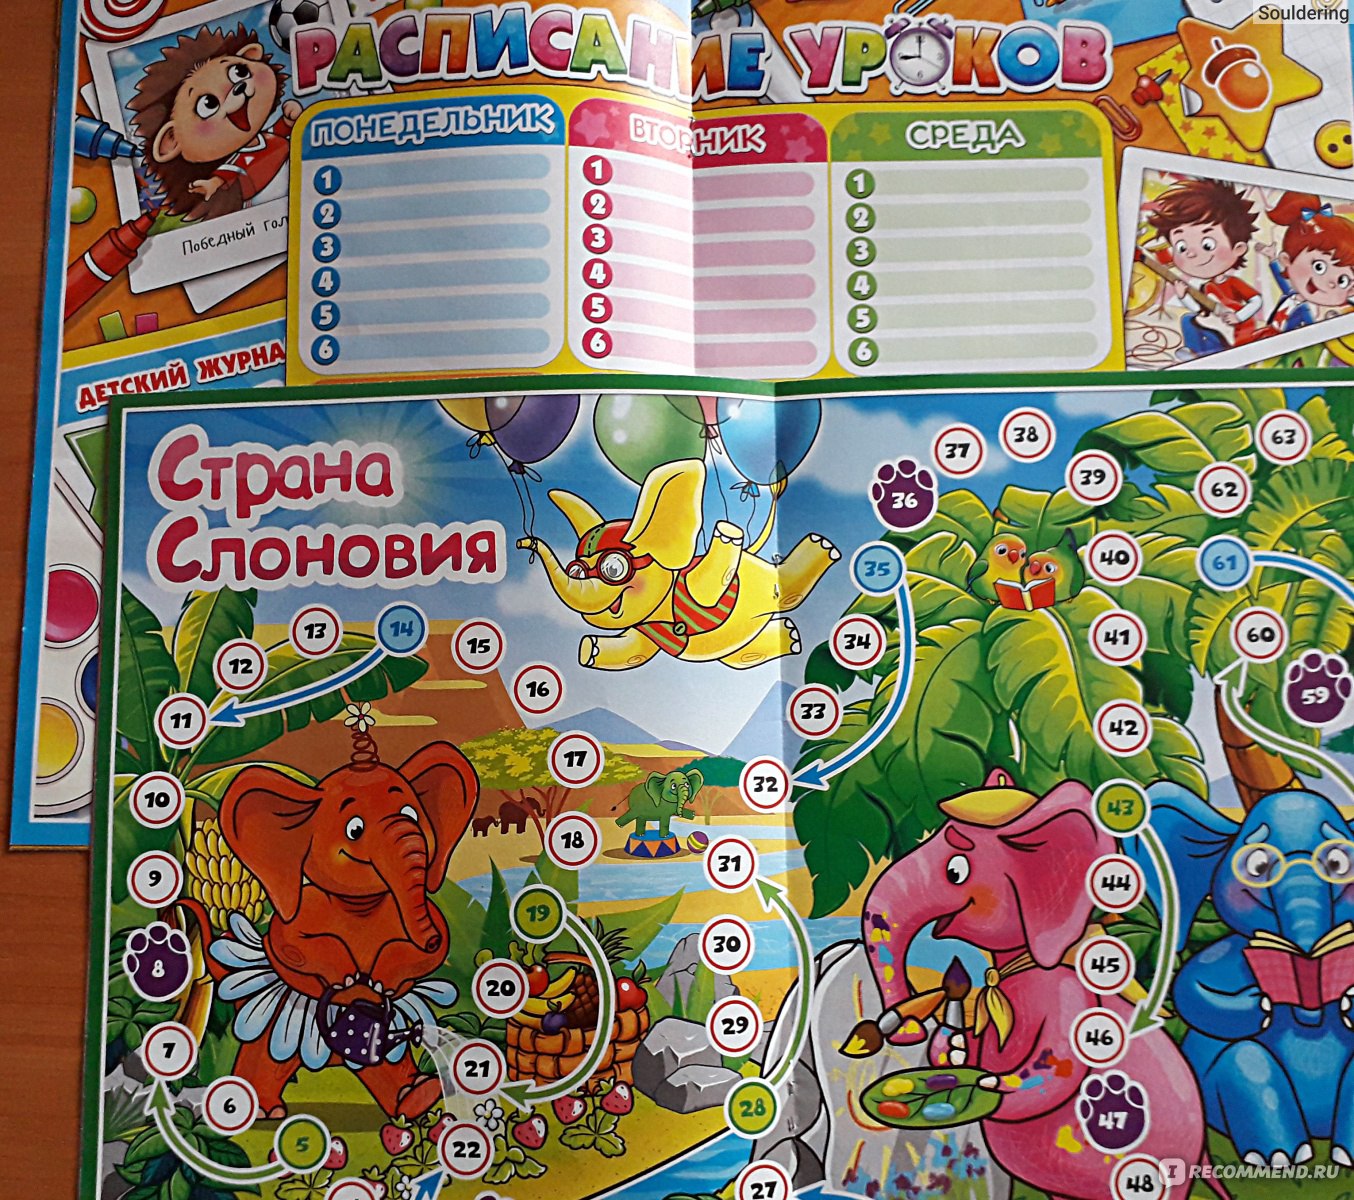 В России впервые выпустили детский журнал с ароматом жасмина